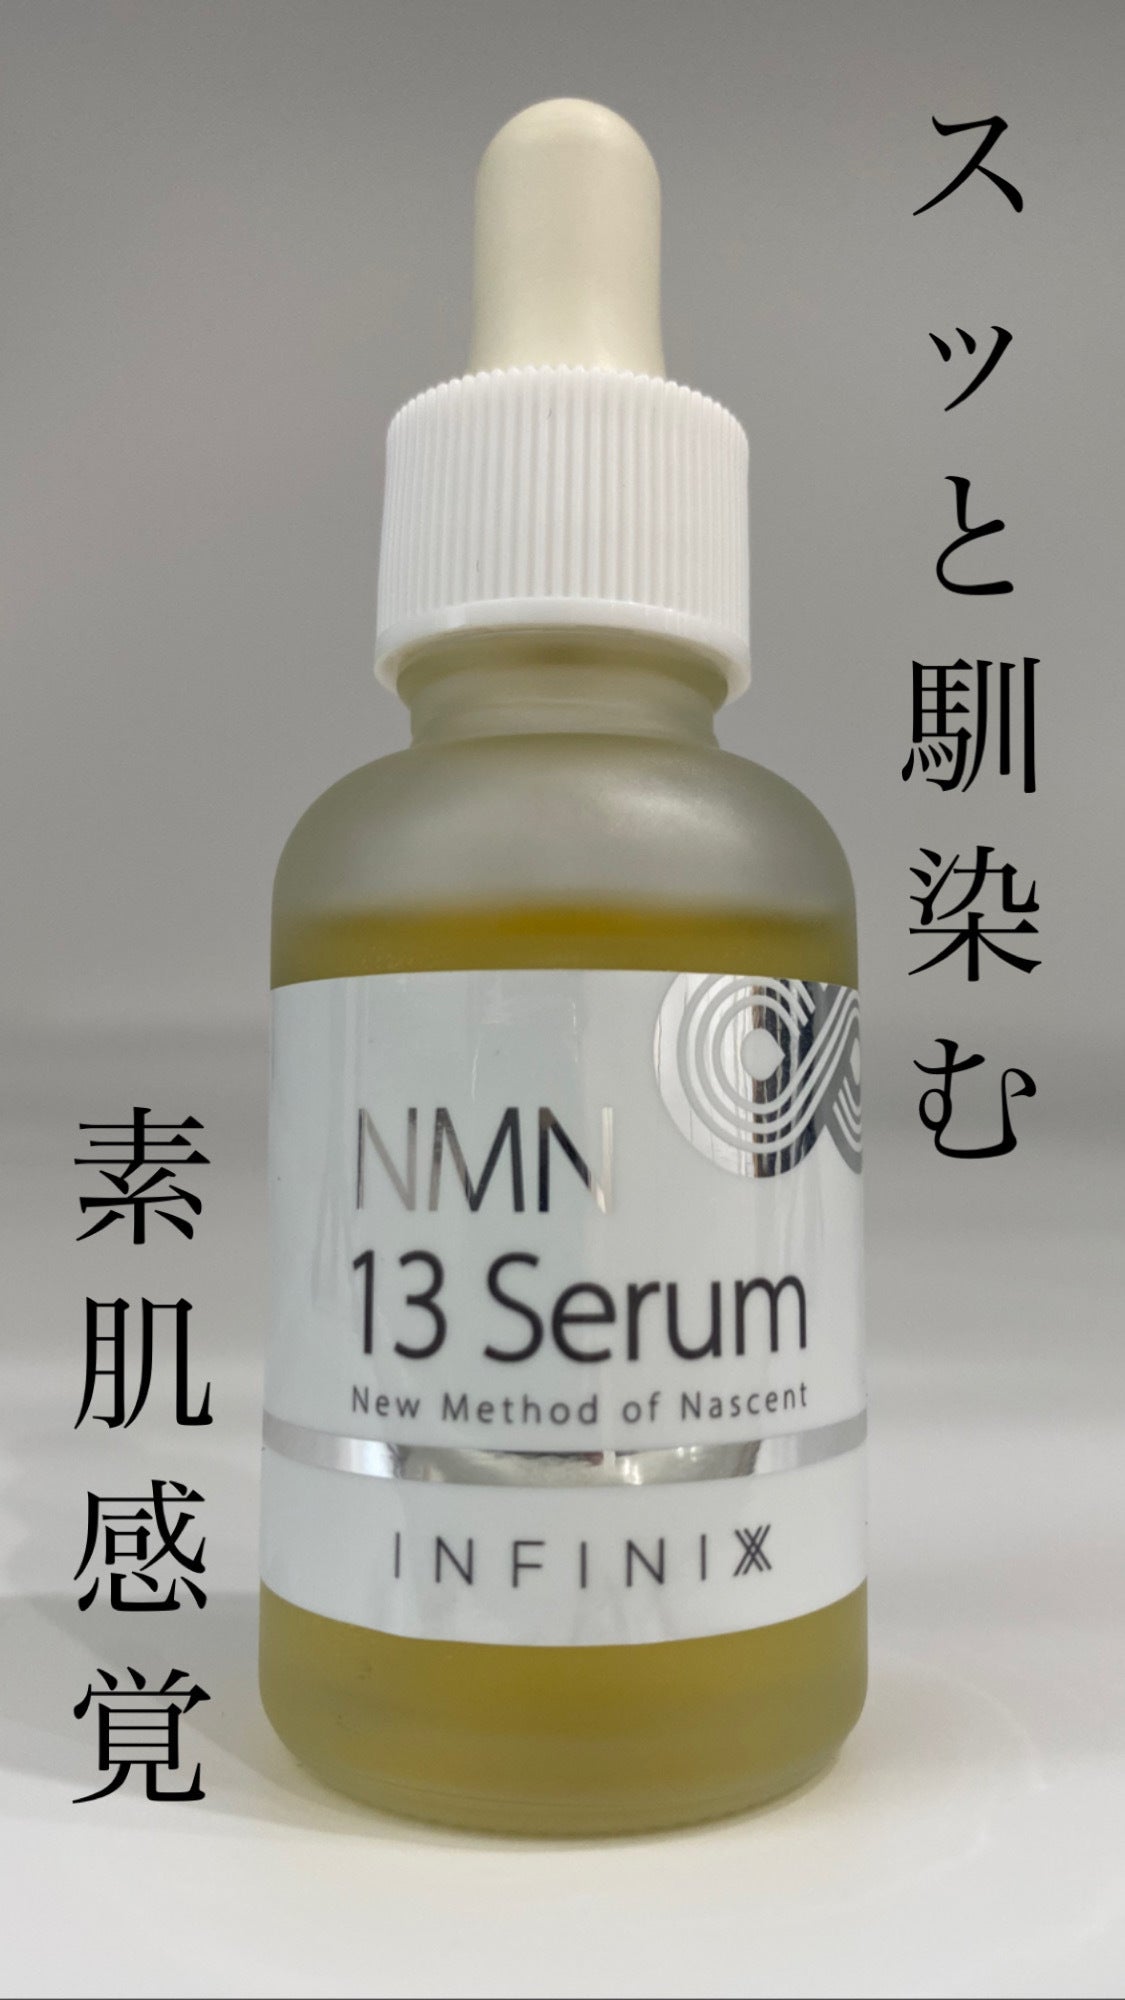 通販サイトの激安商品 NMN 13 Serum 30ml - スキンケア/基礎化粧品